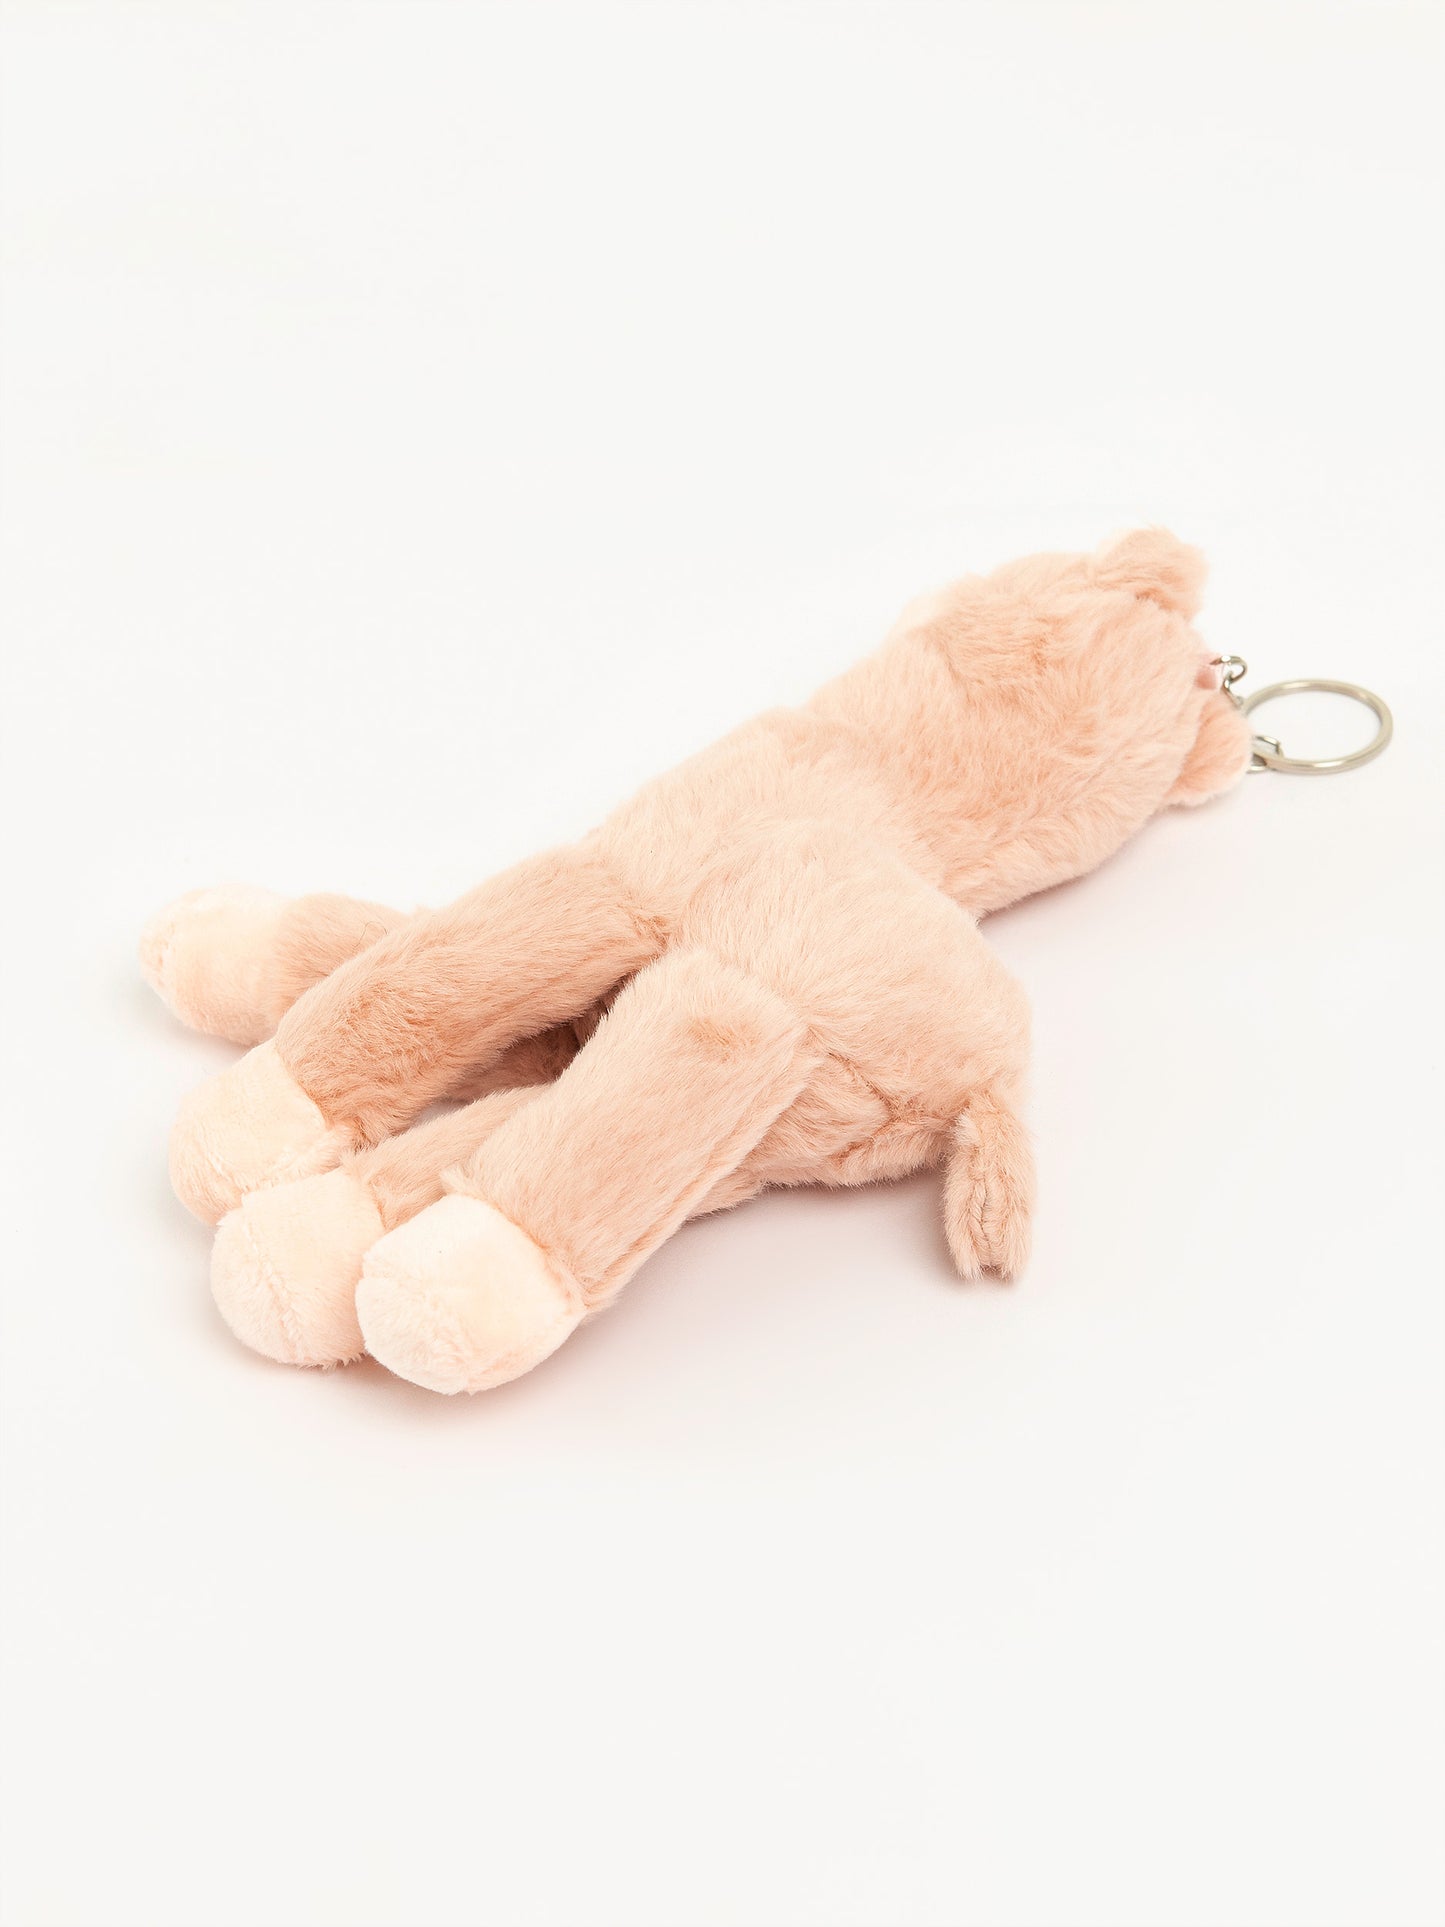 Llama Stuffed Toy Keychain